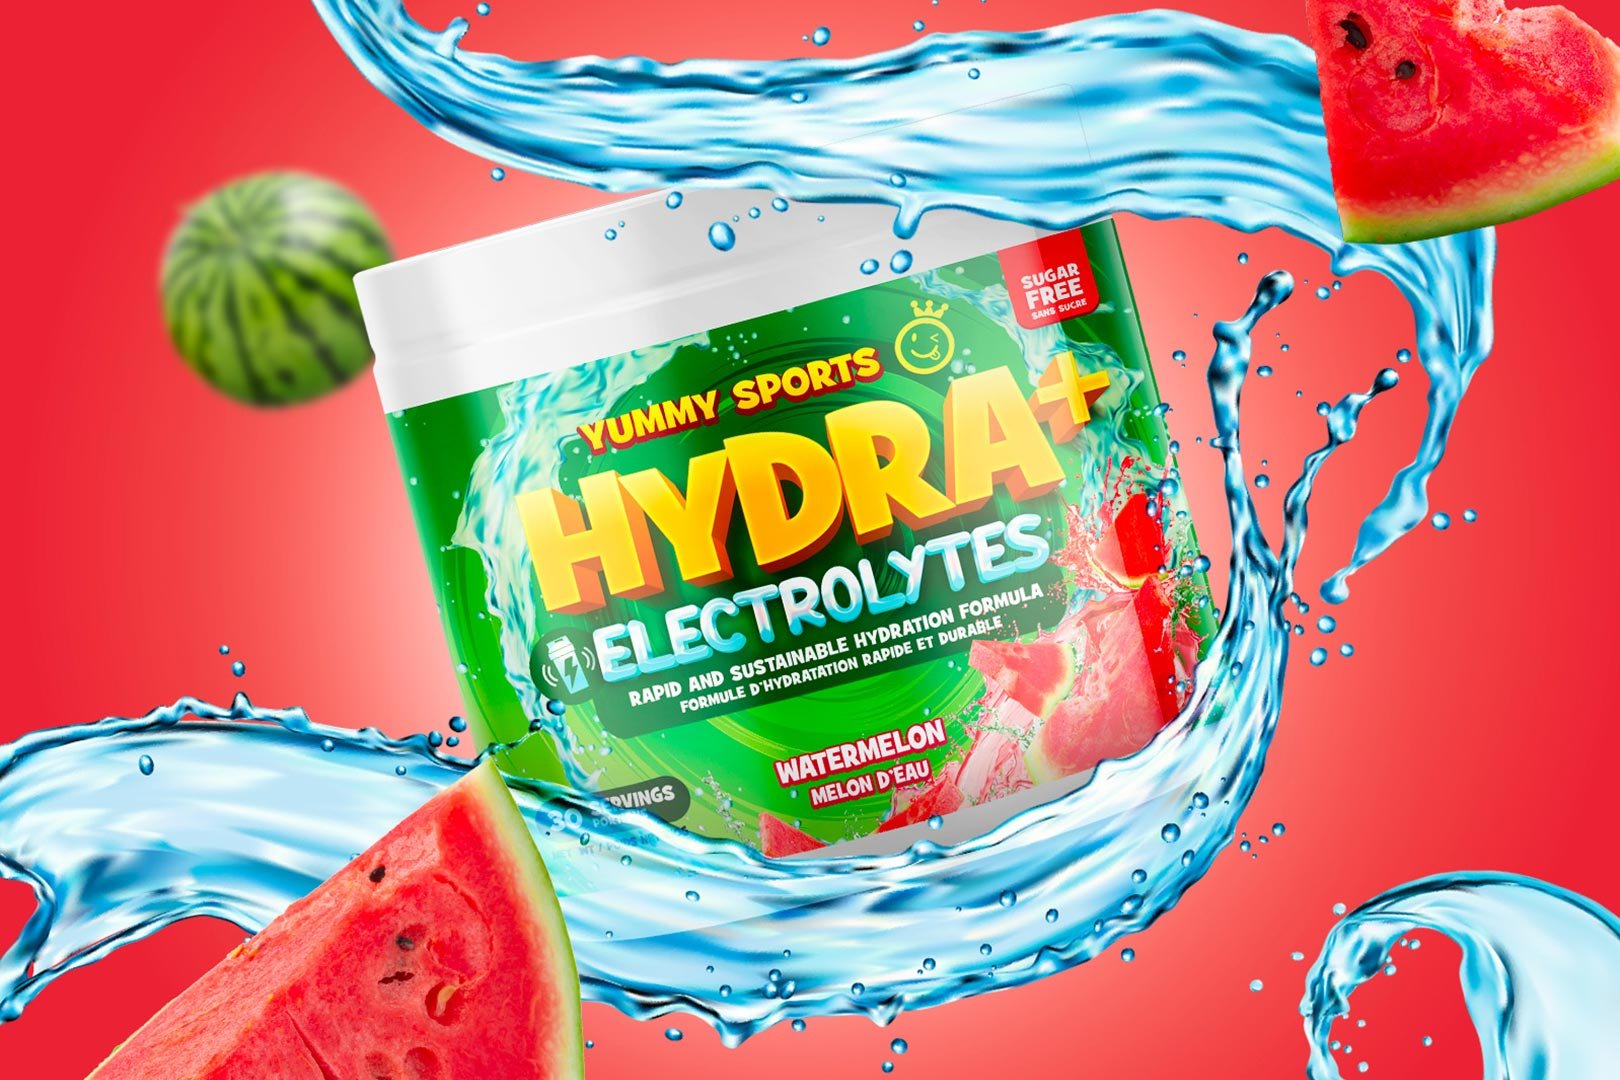 Yummy Sports Hydra Electrolytes